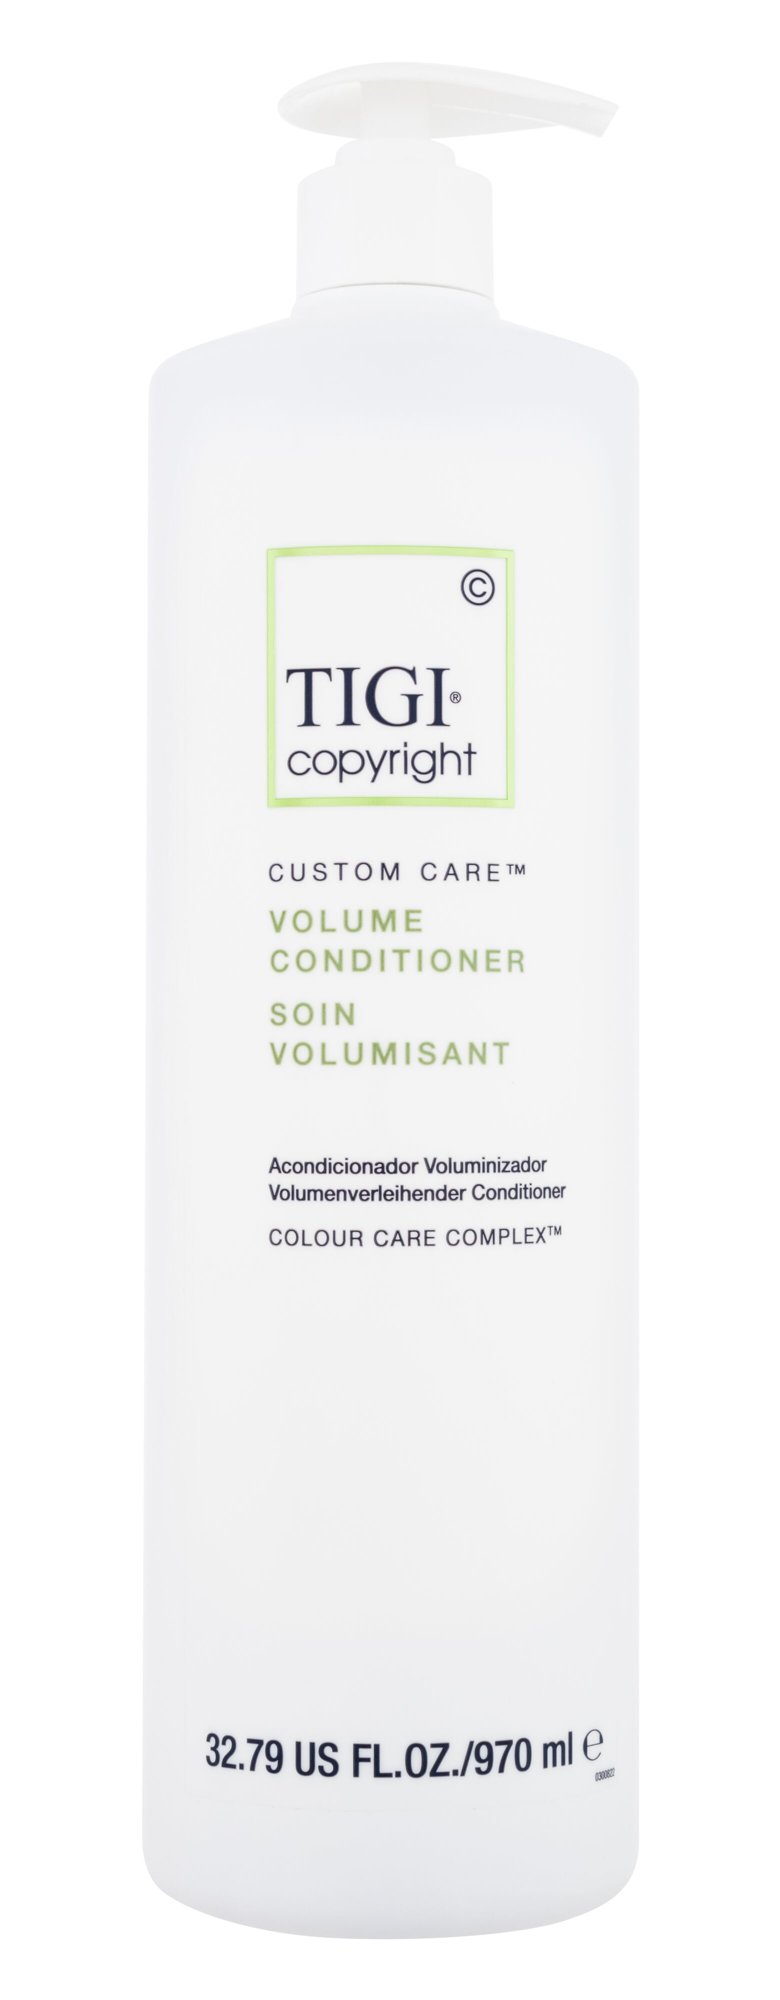 Tigi Copyright Custom Care Volume Conditioner kondicionierius